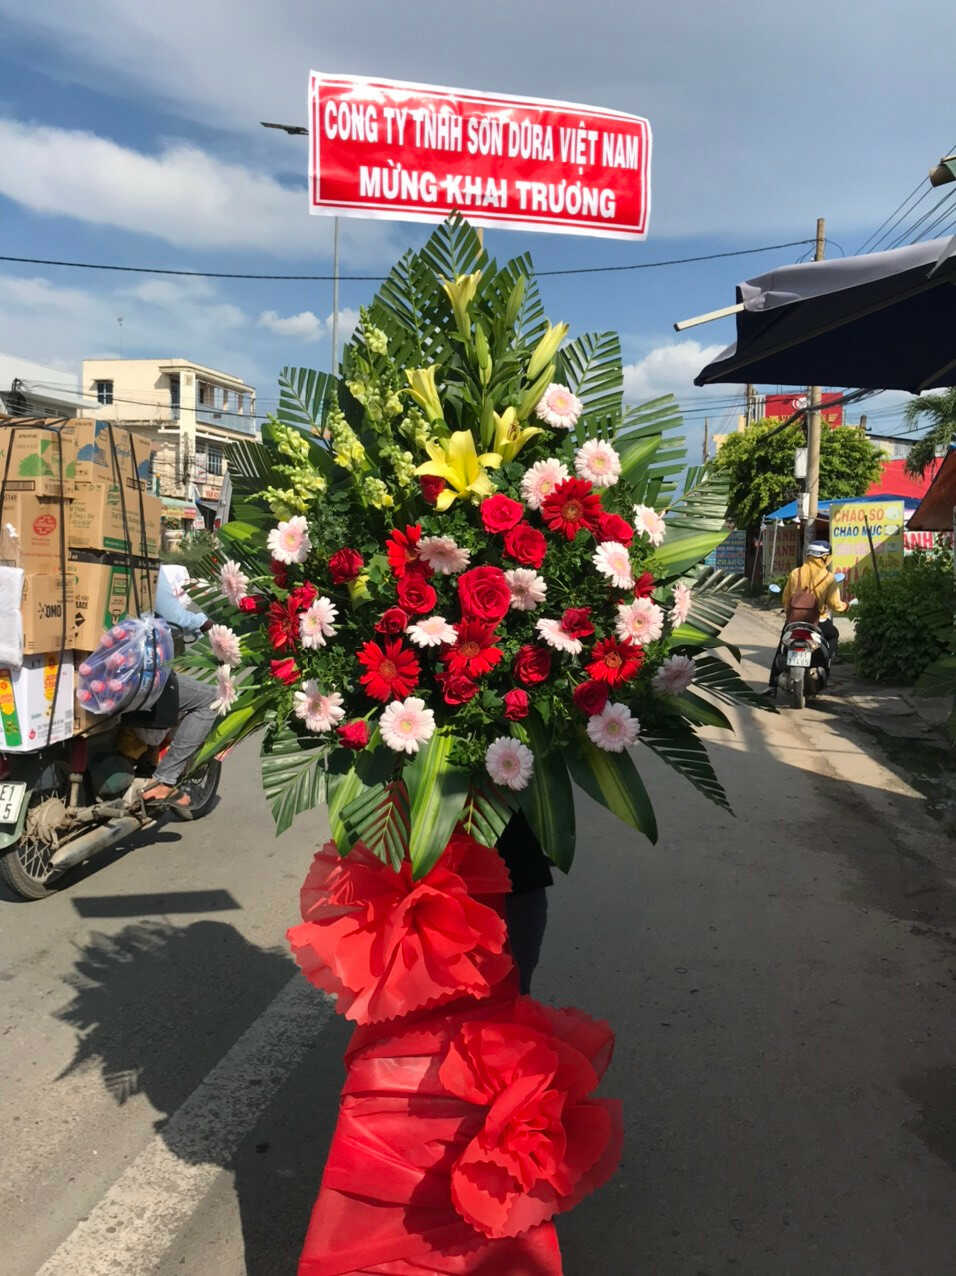 Mẫu Hoa khai trương tại điện hoa huyện Đan Phượng, Hà Nội